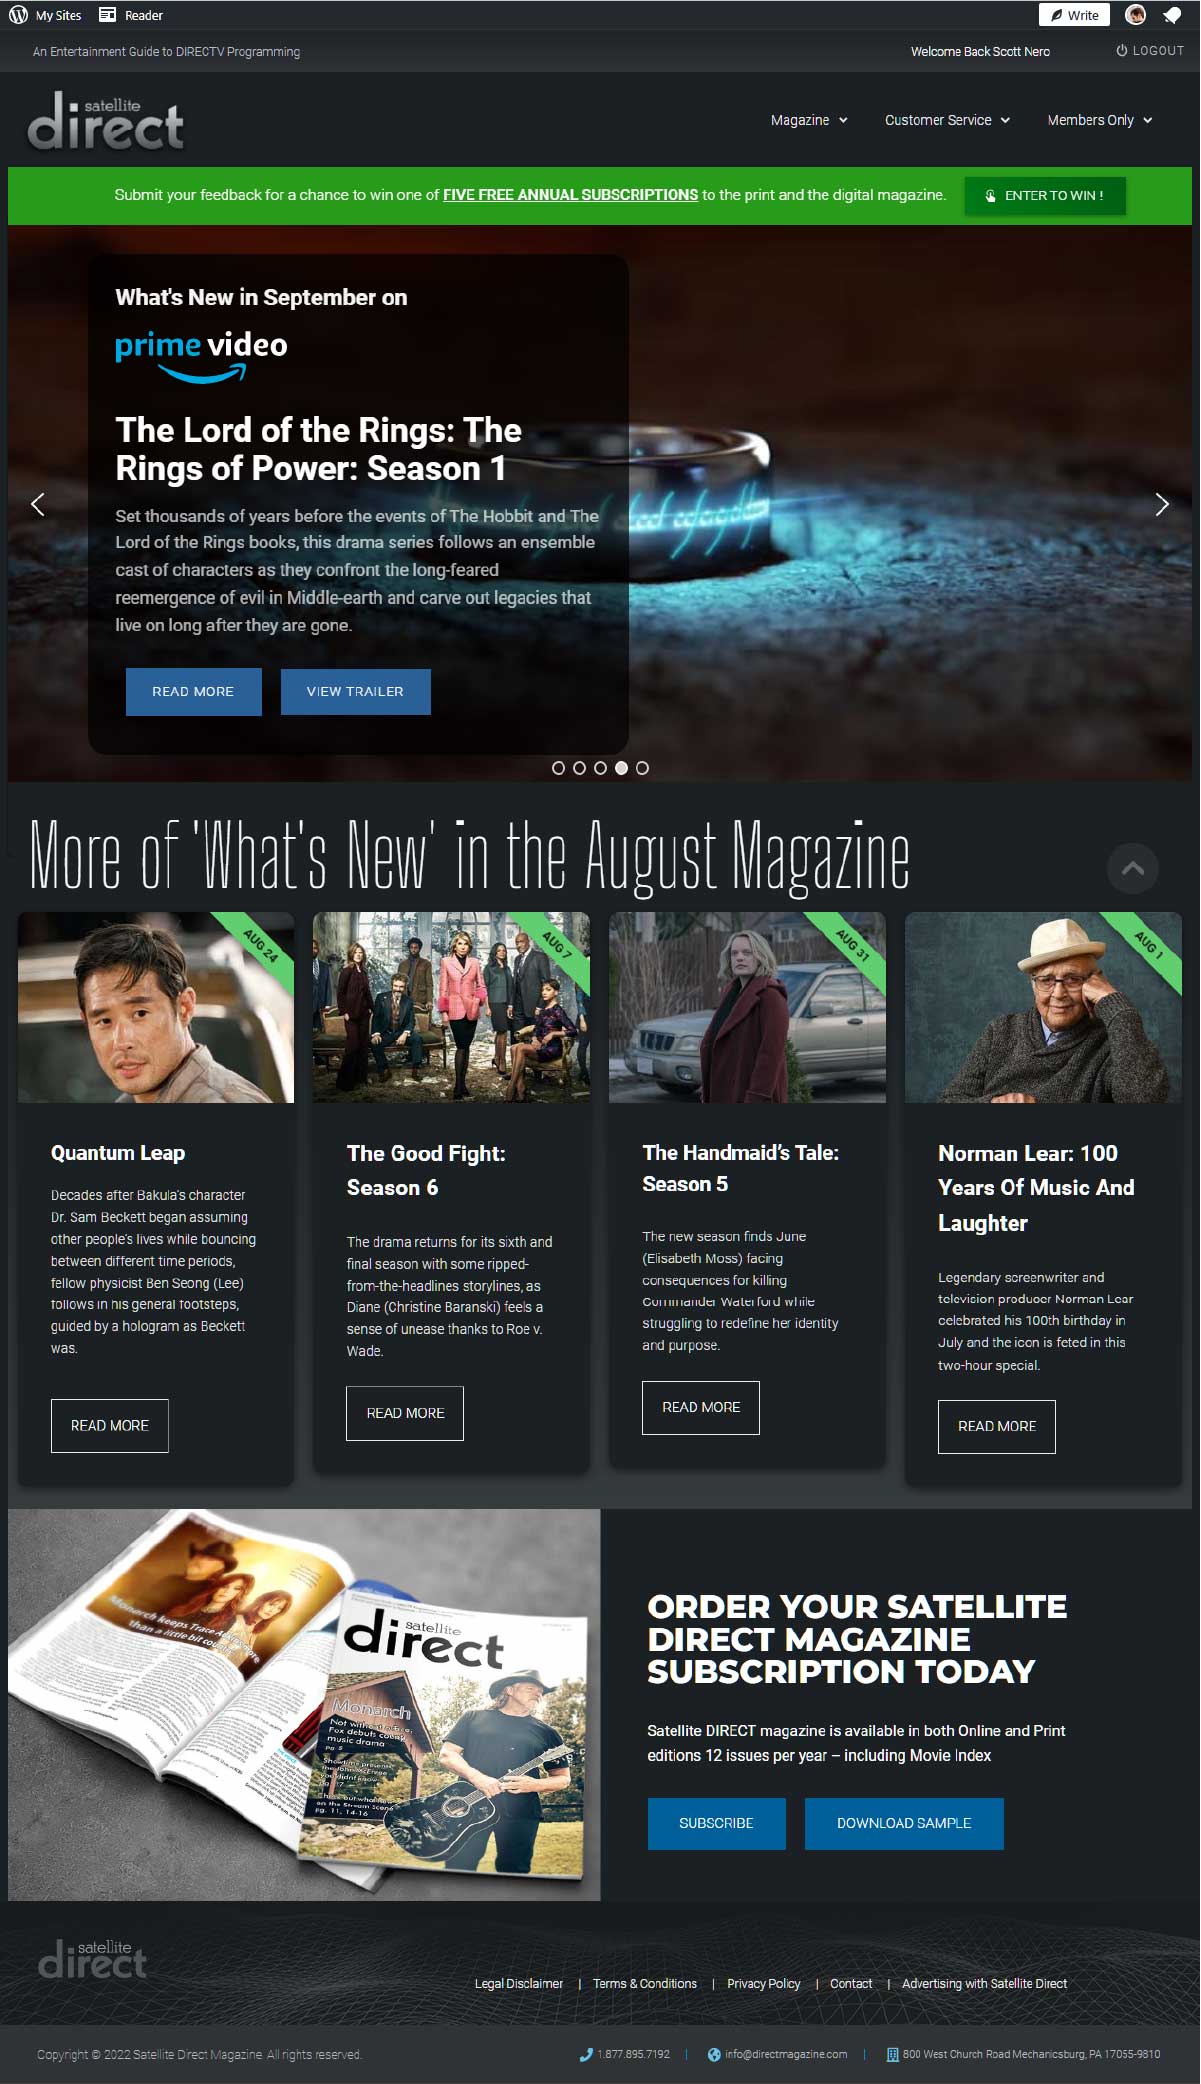 Satellite Direct Magazine Homepage